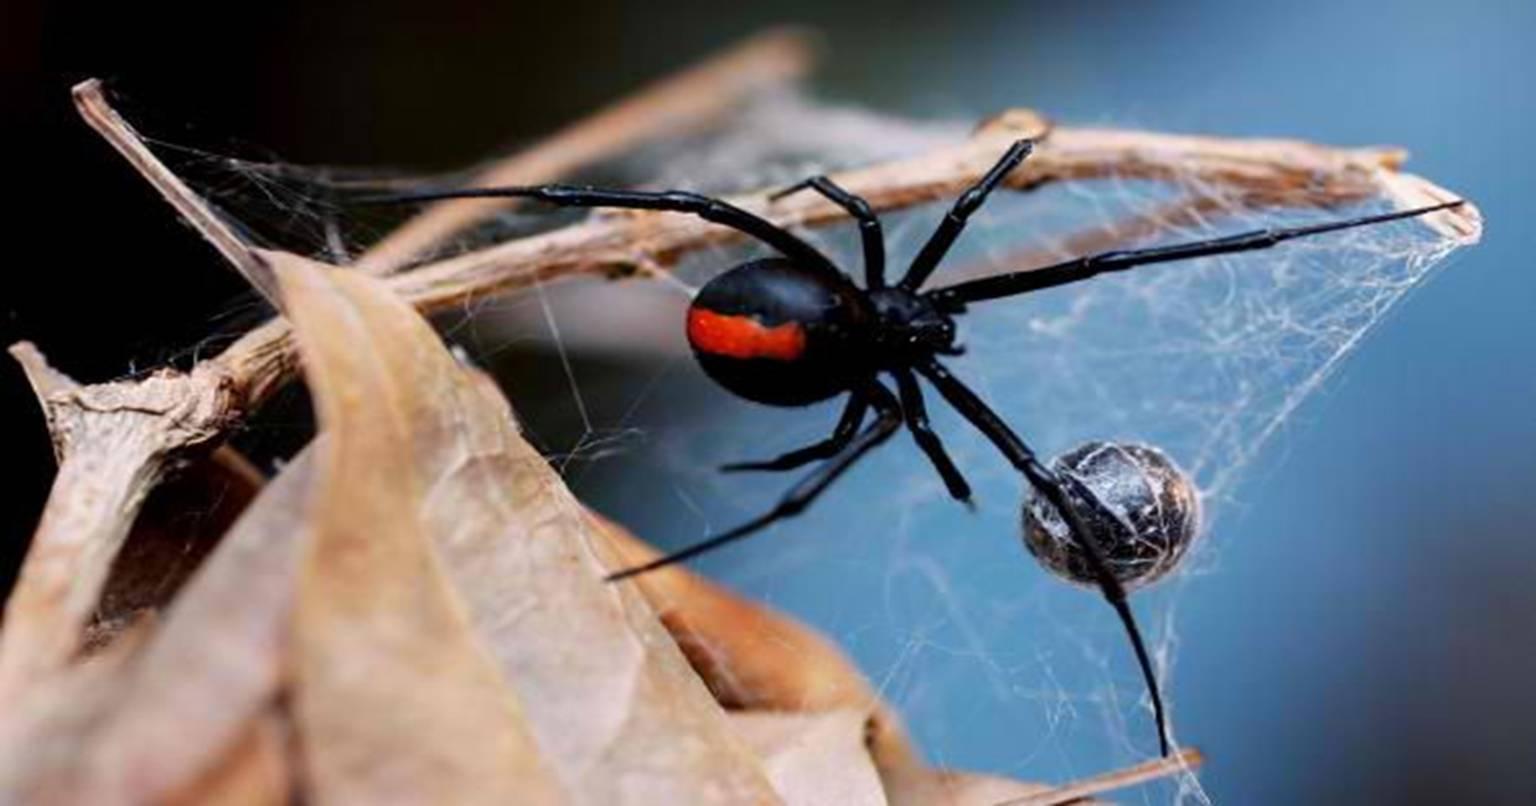 video: ये है दुनिया की सबसे अनोखी मकड़ी जो करती है शिकार, खाती है इंसानों का मांस…पहली बार हुई कैमरे में कैद